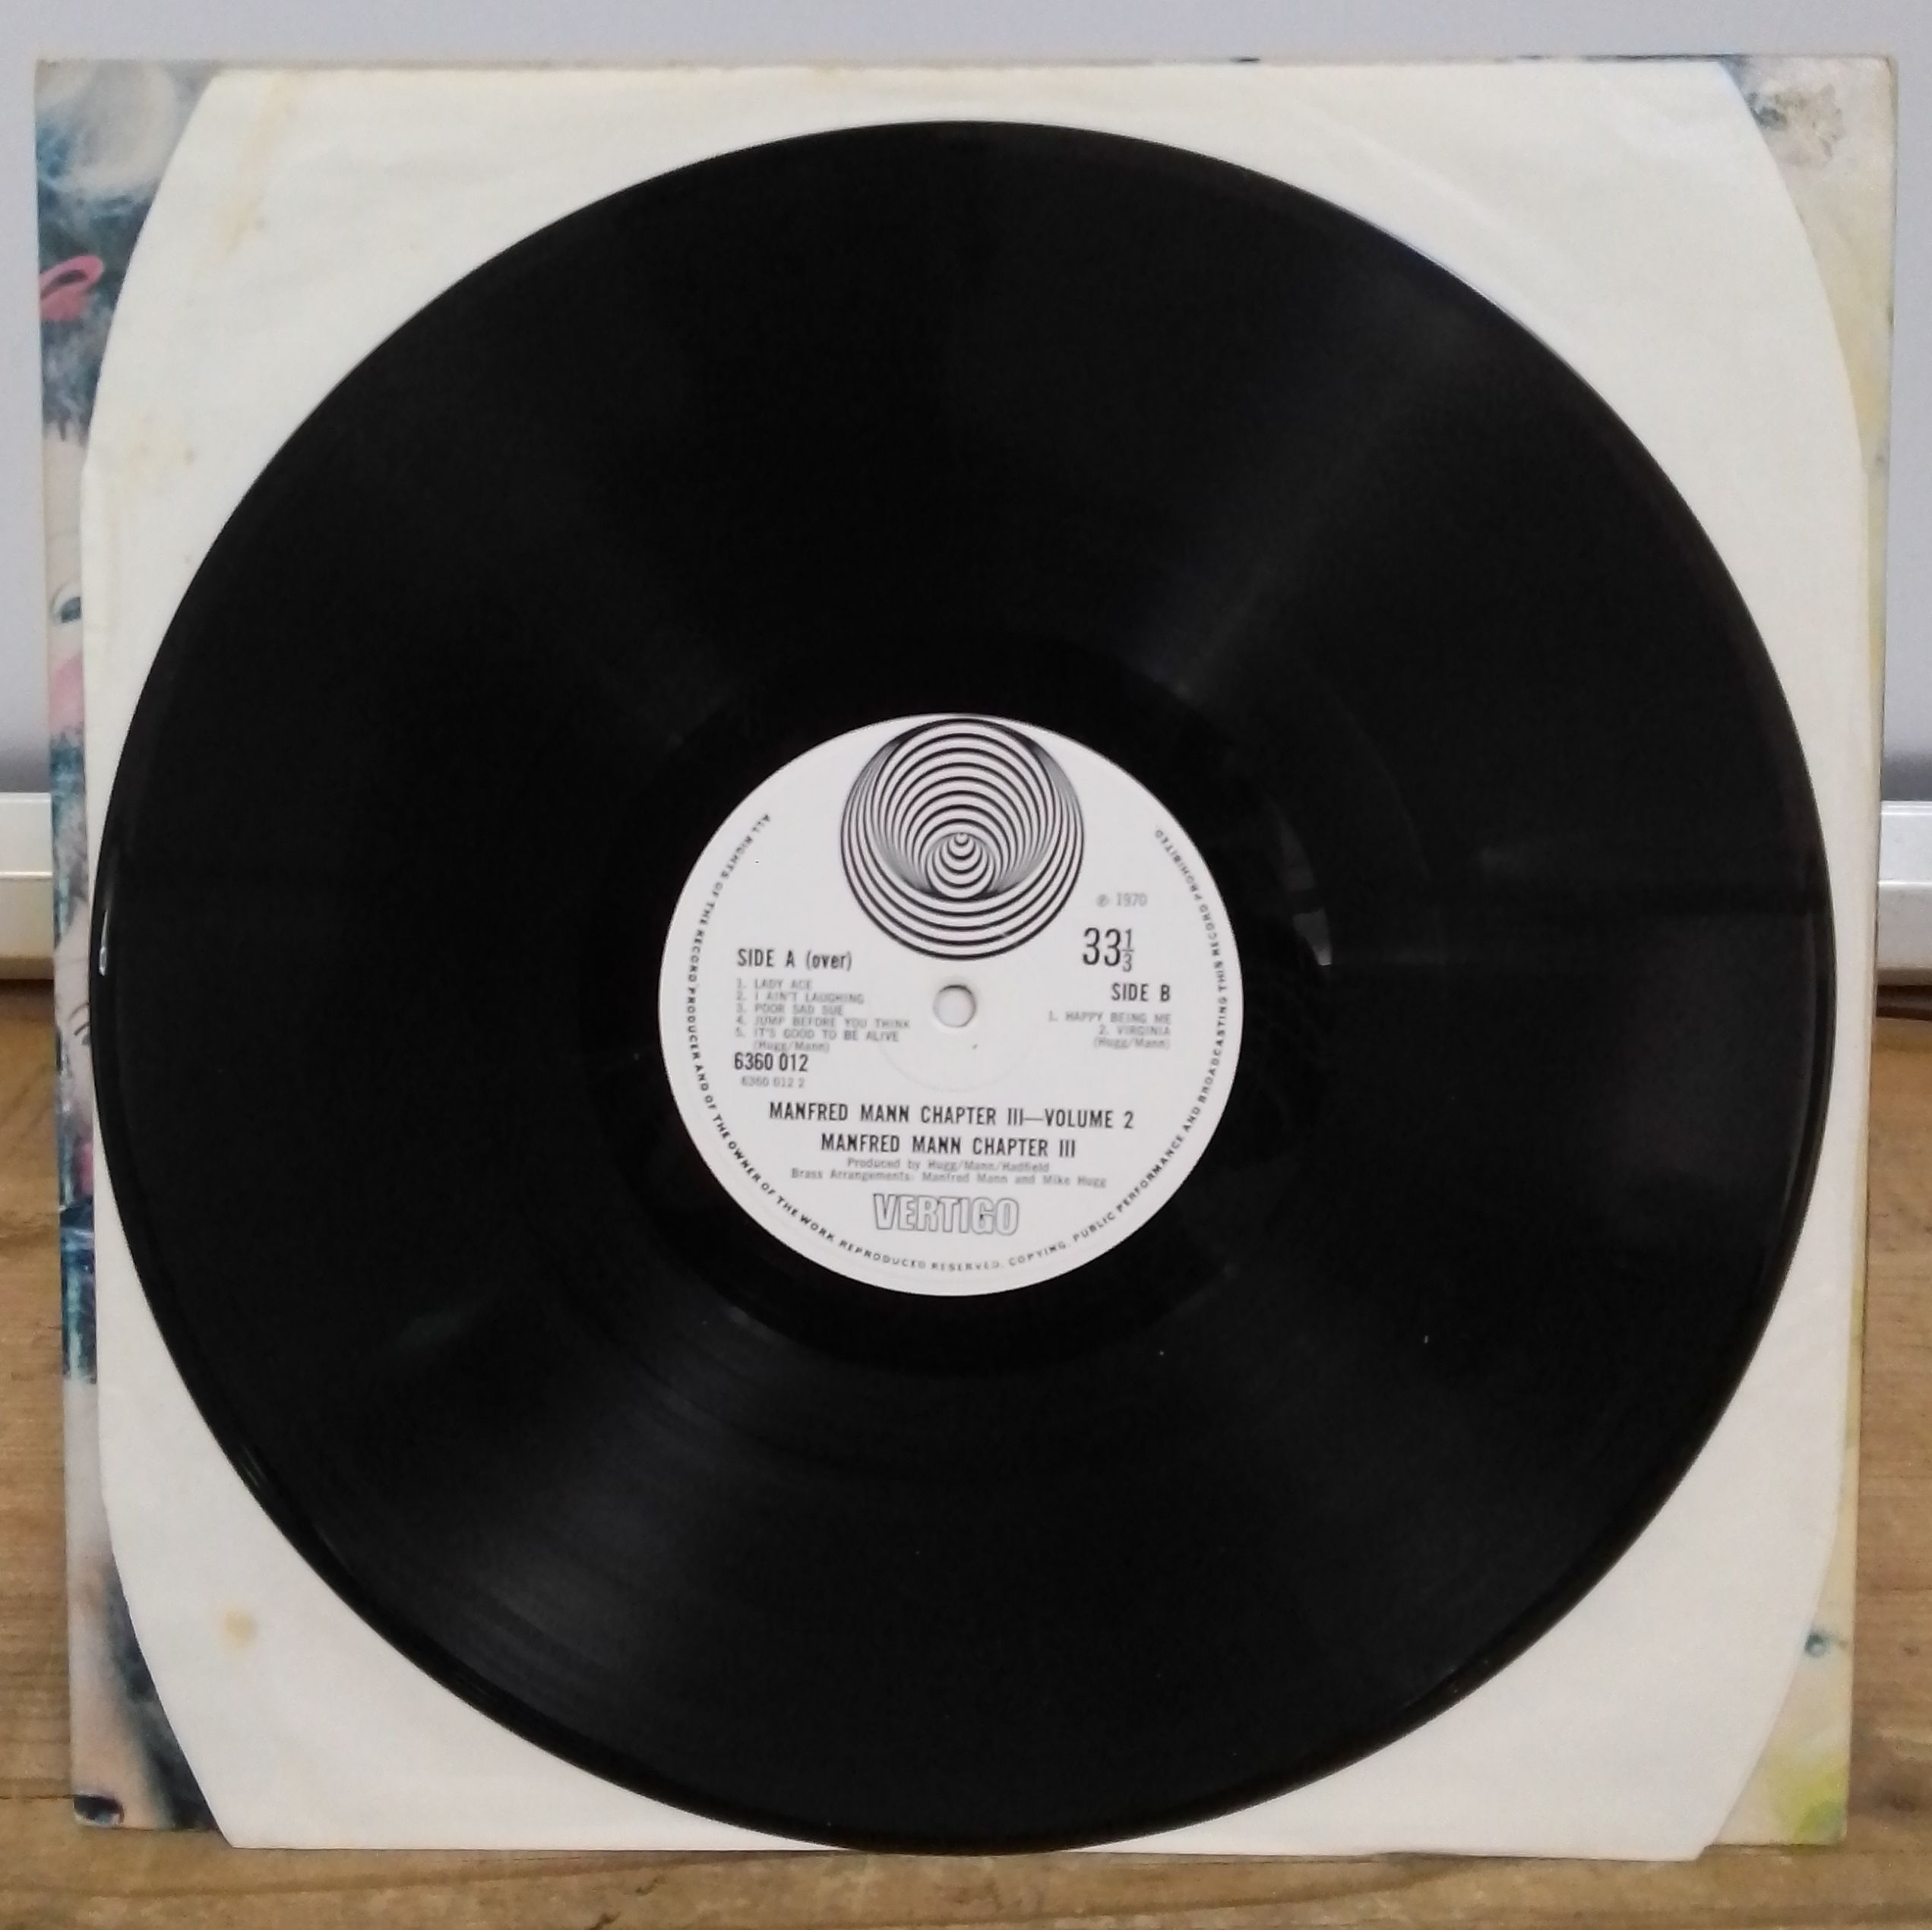 Manfred Mann - Chapter Three Volume Two, gatefold stereo LP, 1st pressing, UK 1970, Vertigo 6360 012 - Image 4 of 5